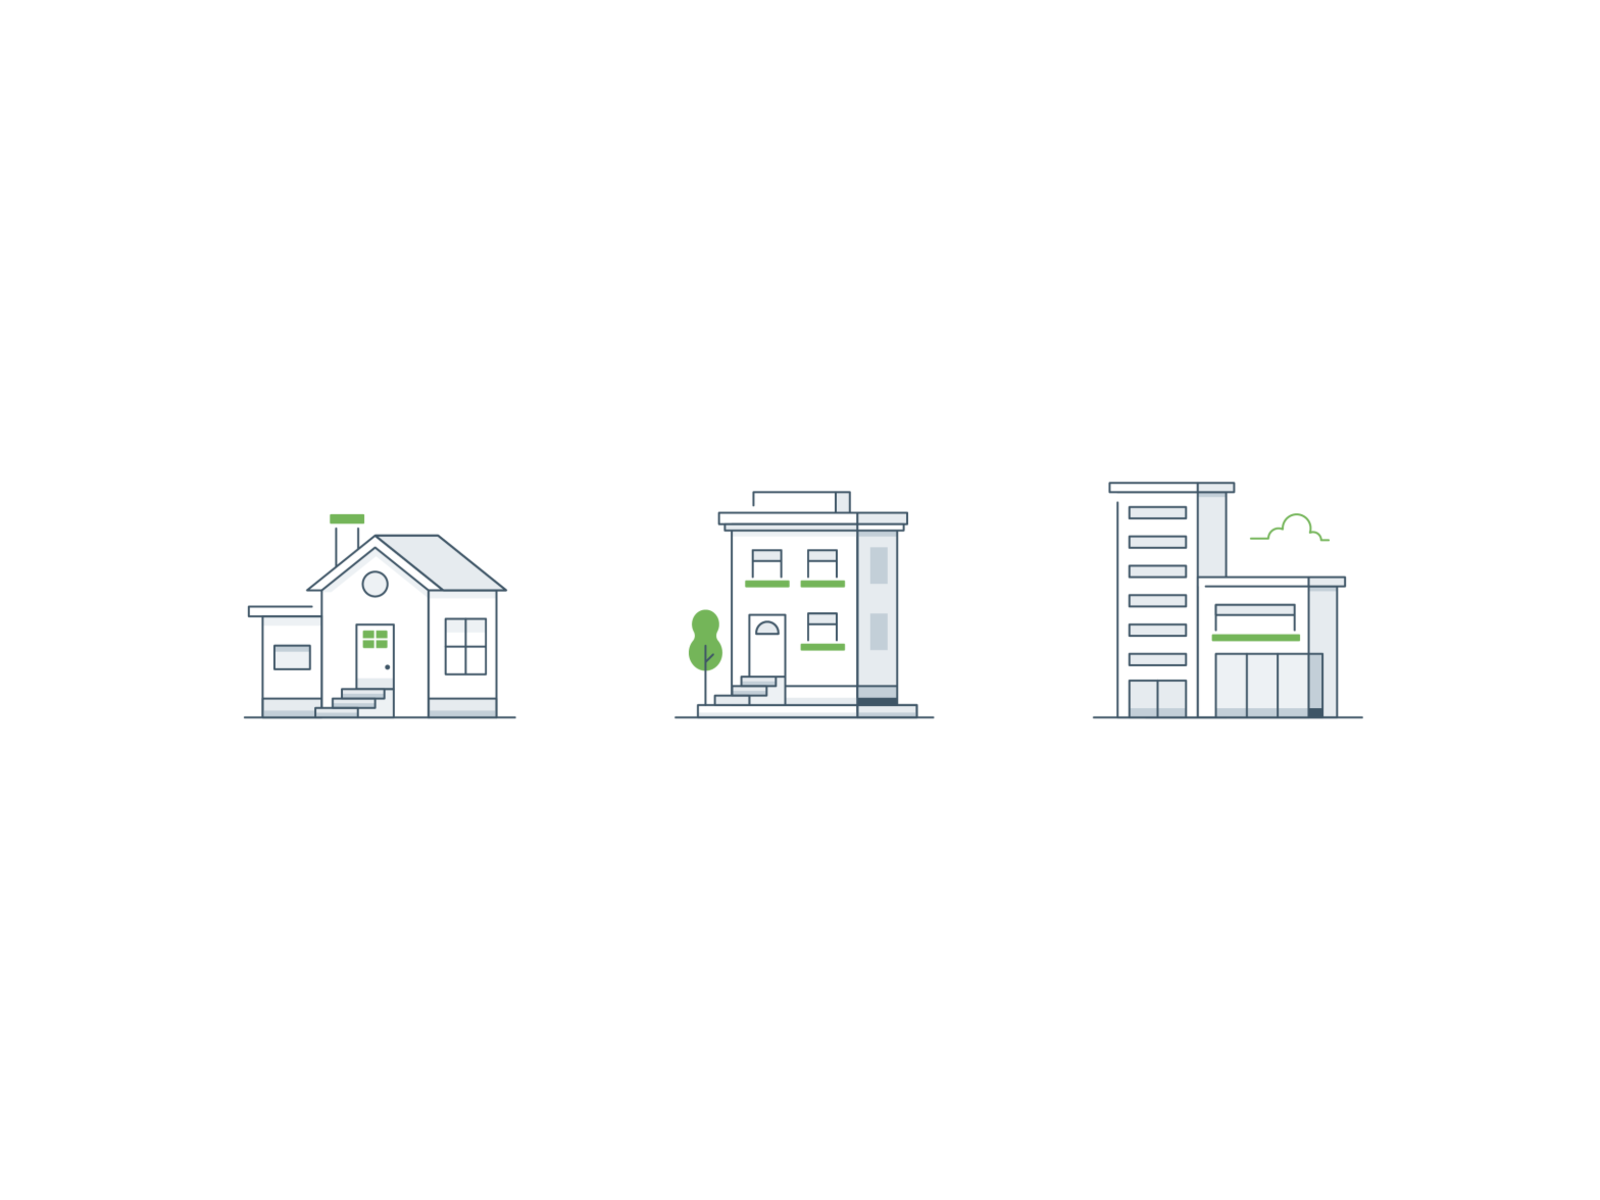 House, apartment, condo visual condominium condo apartment home house design ui tree illustrator vector icon minimal illustration